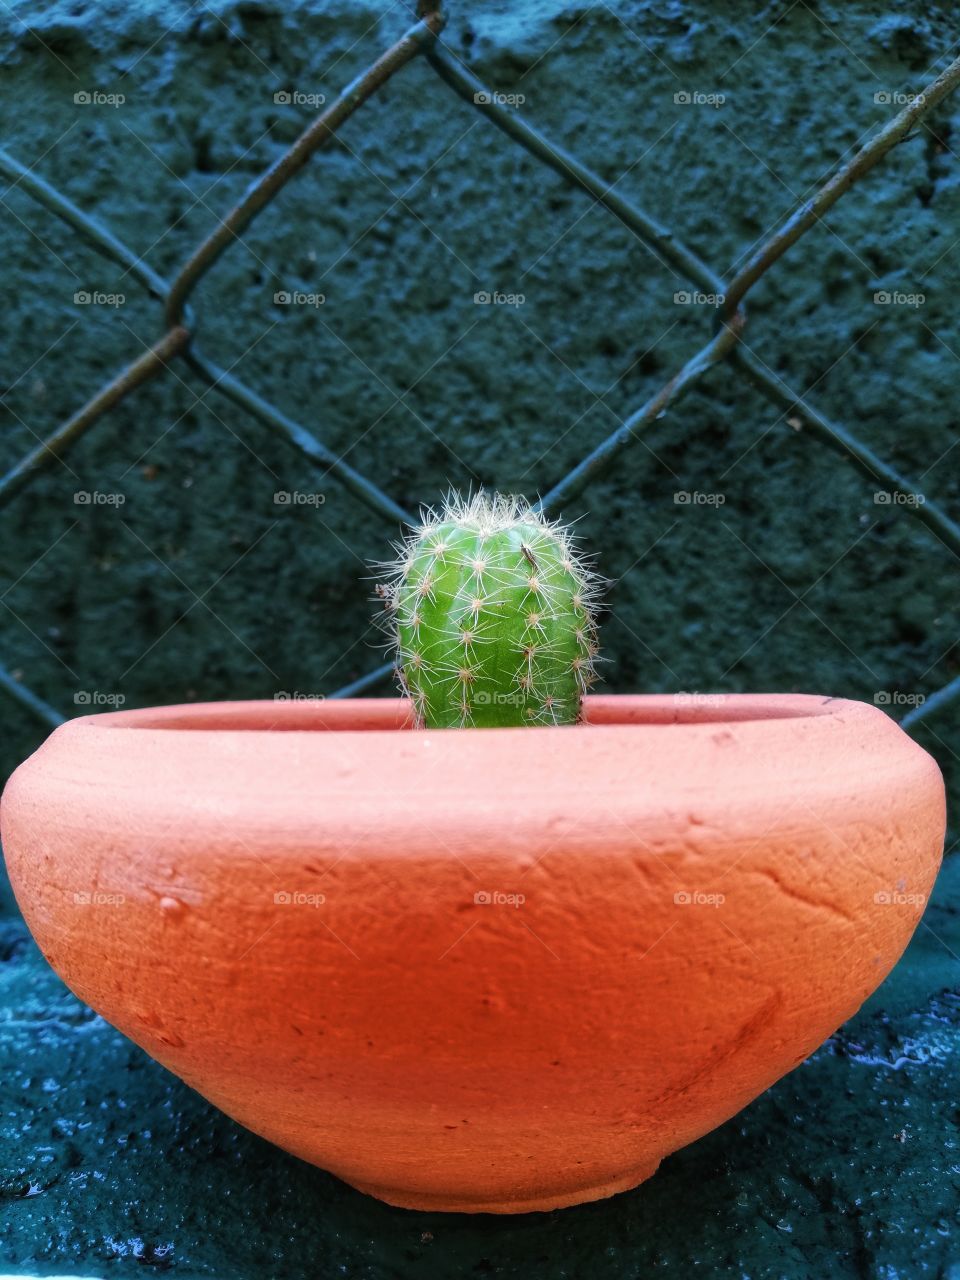 #Cactus